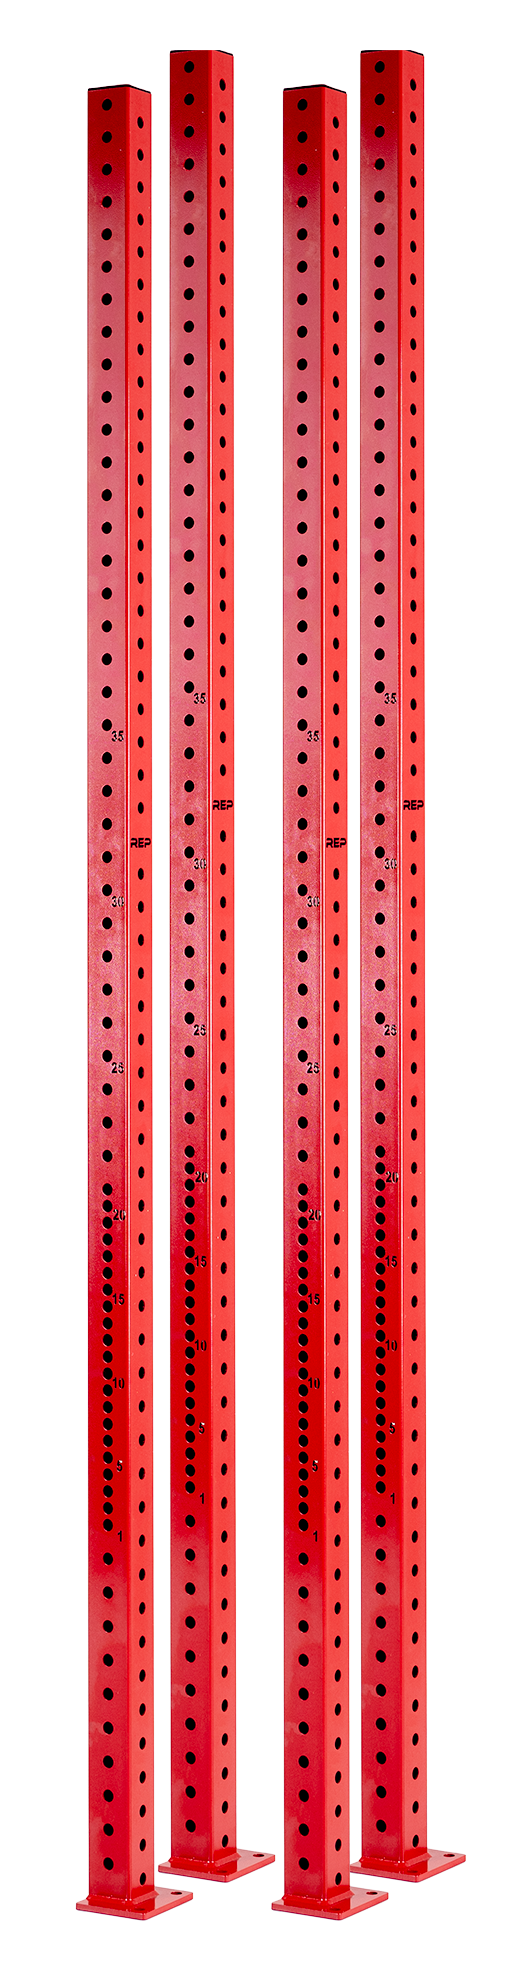 Rig Uprights - 4000 / Set / Red